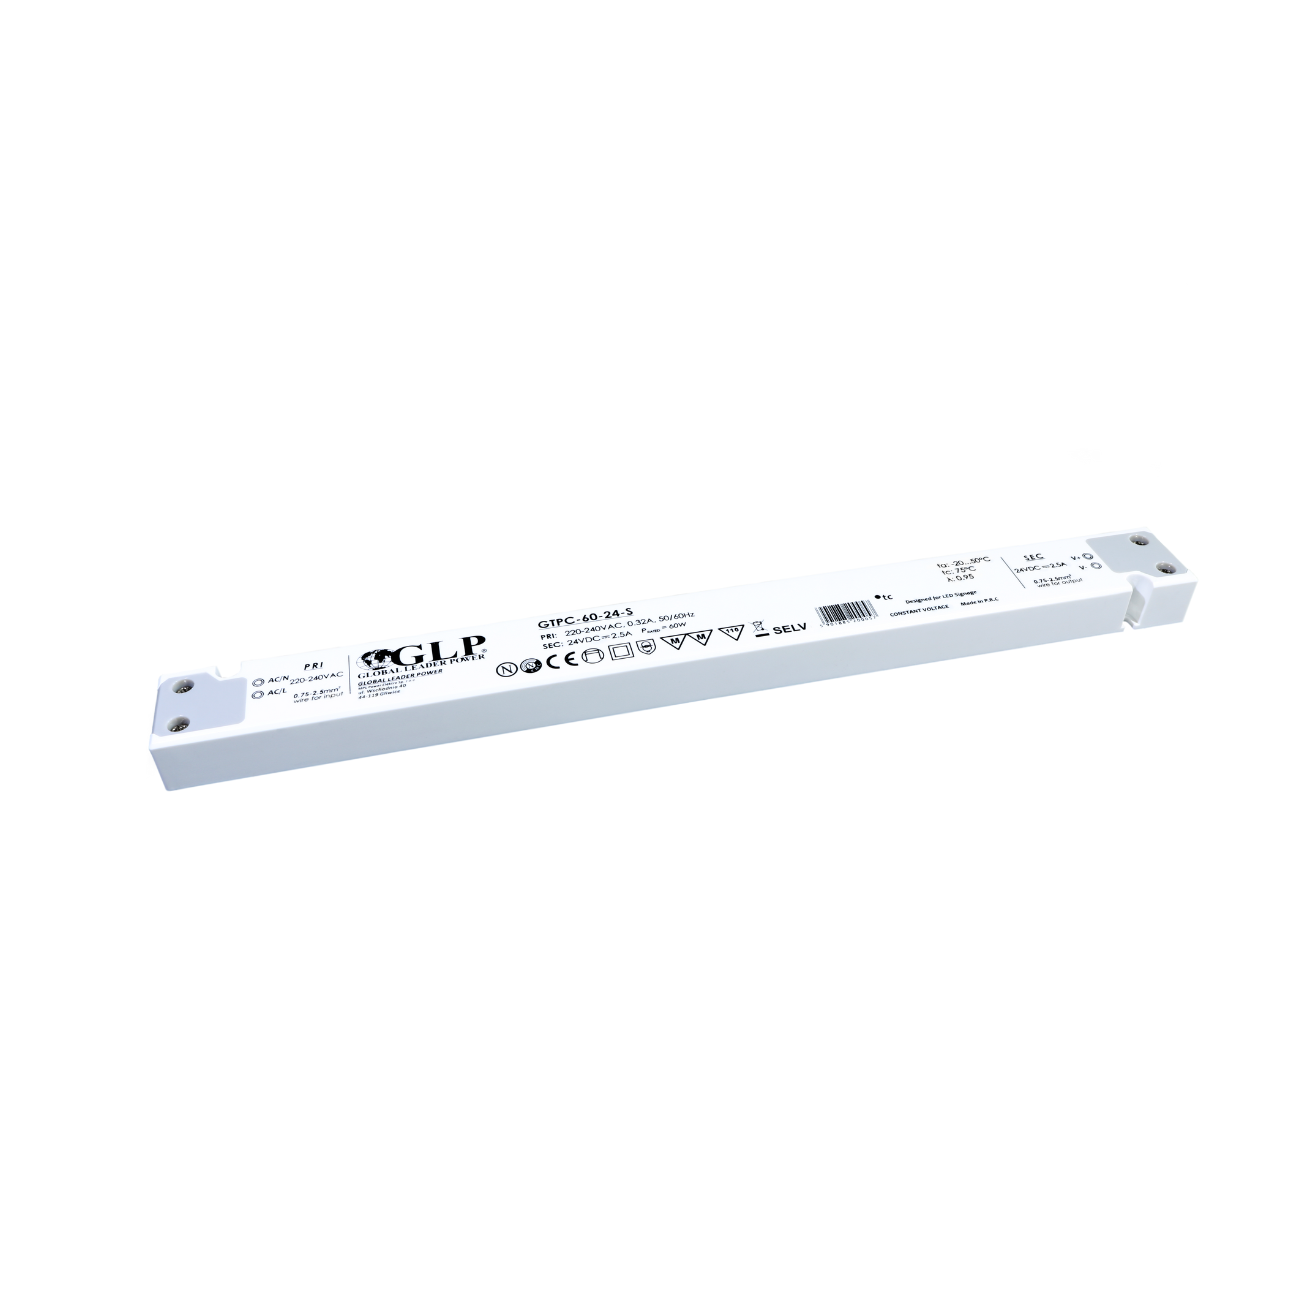 GTPC-60-12-S (60W/12V) LED-Netzteil (slim)